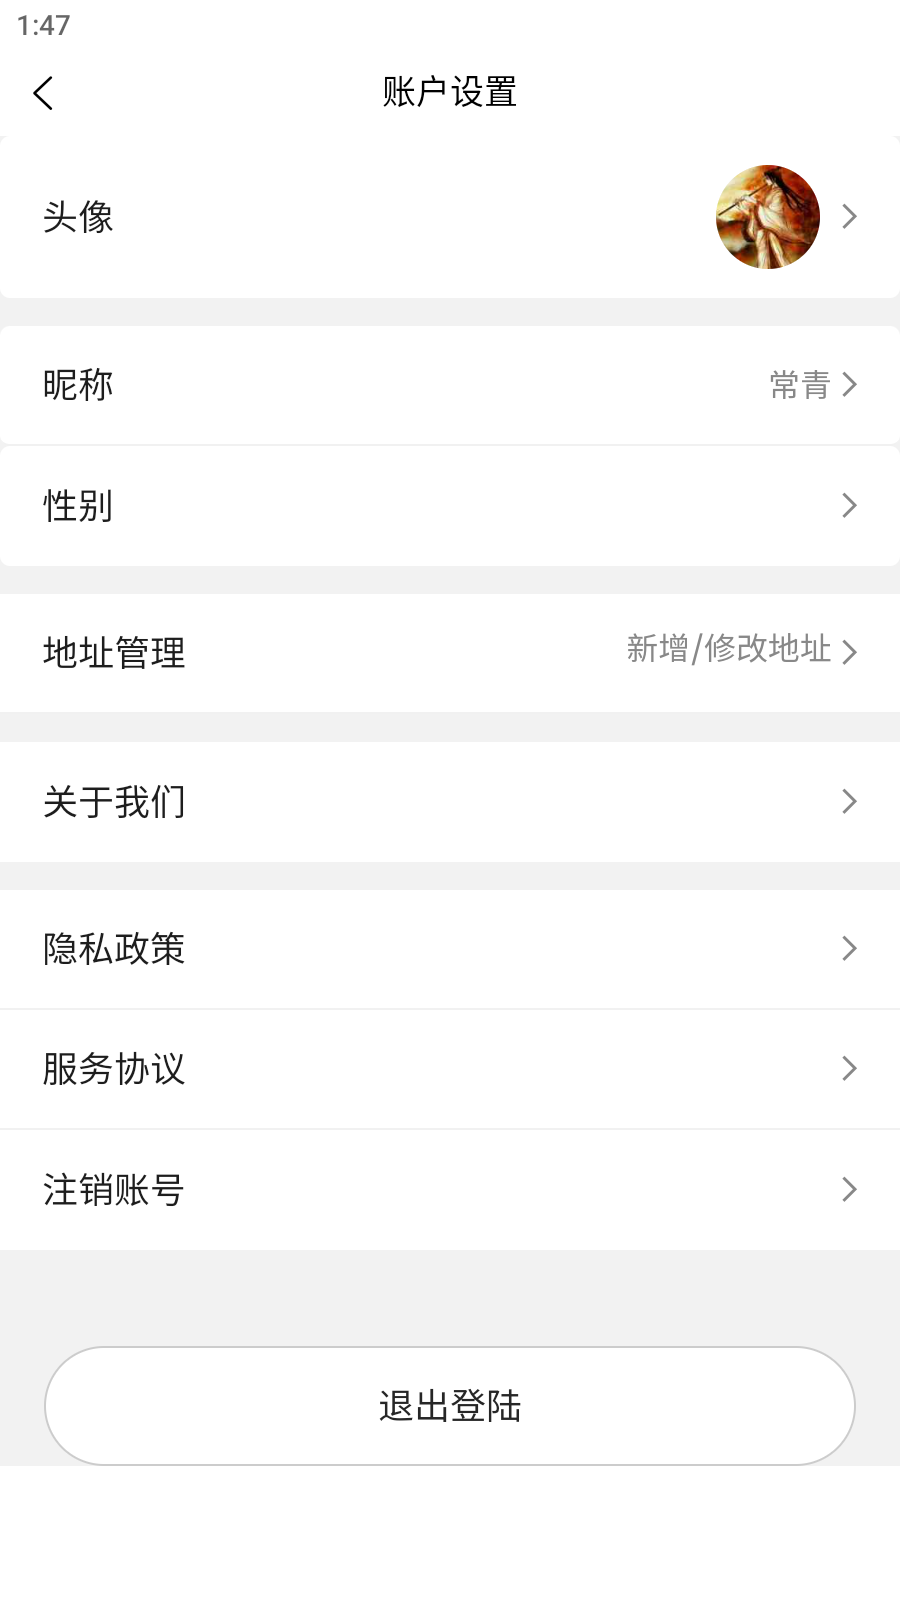 聚成商汇app官方版图1: